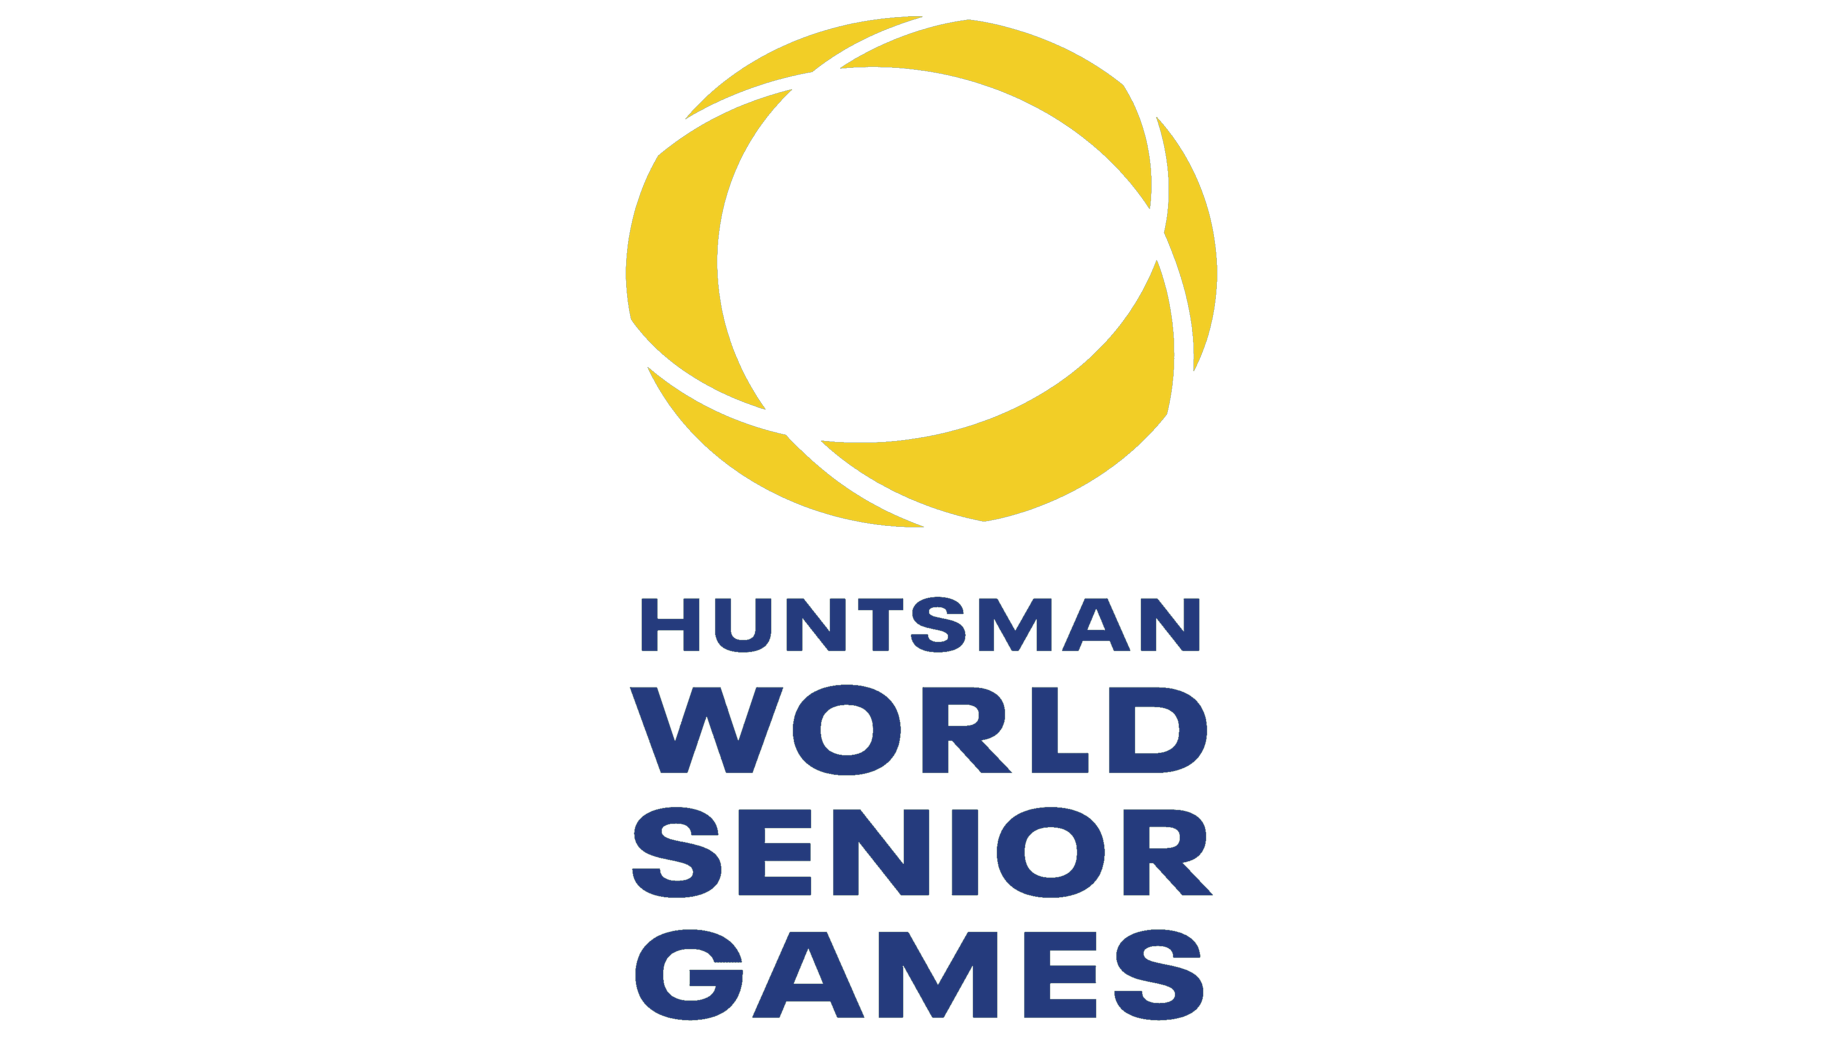 Huntsman world senior games sign